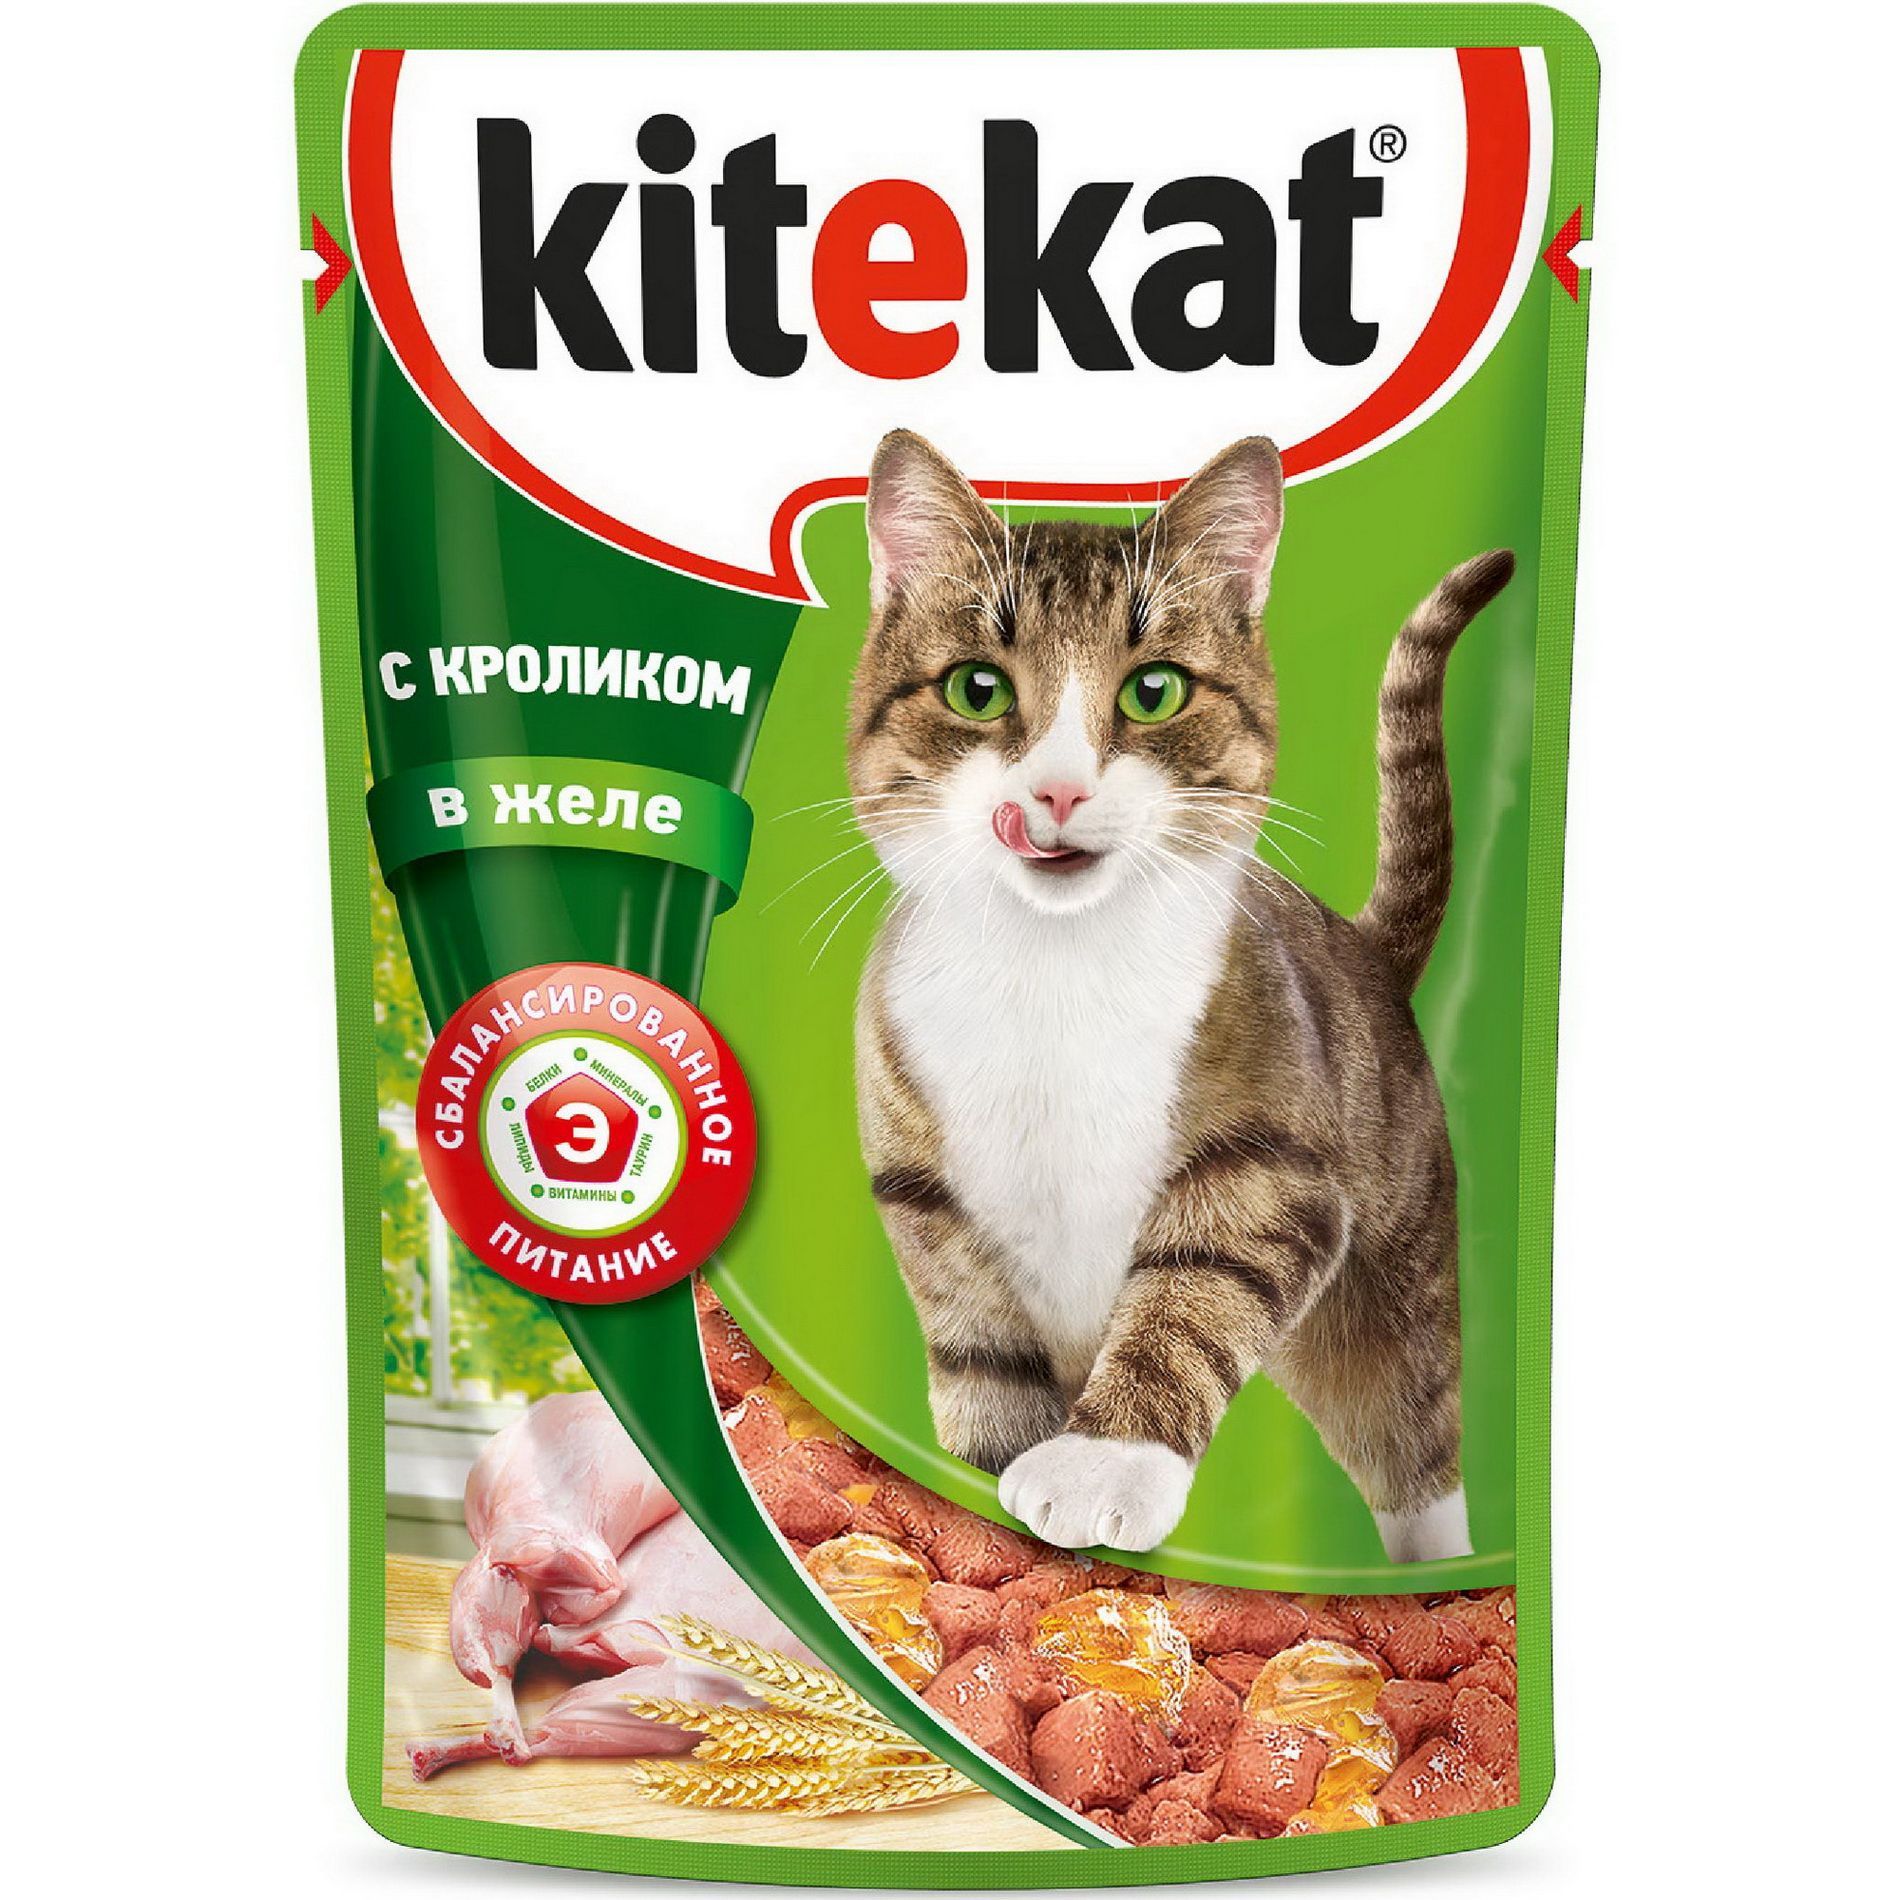 Купить влажный корм для кошек Kitekat, с кроликом в желе, 24шт по 85г, цены на Мегамаркет | Артикул: 100013203552